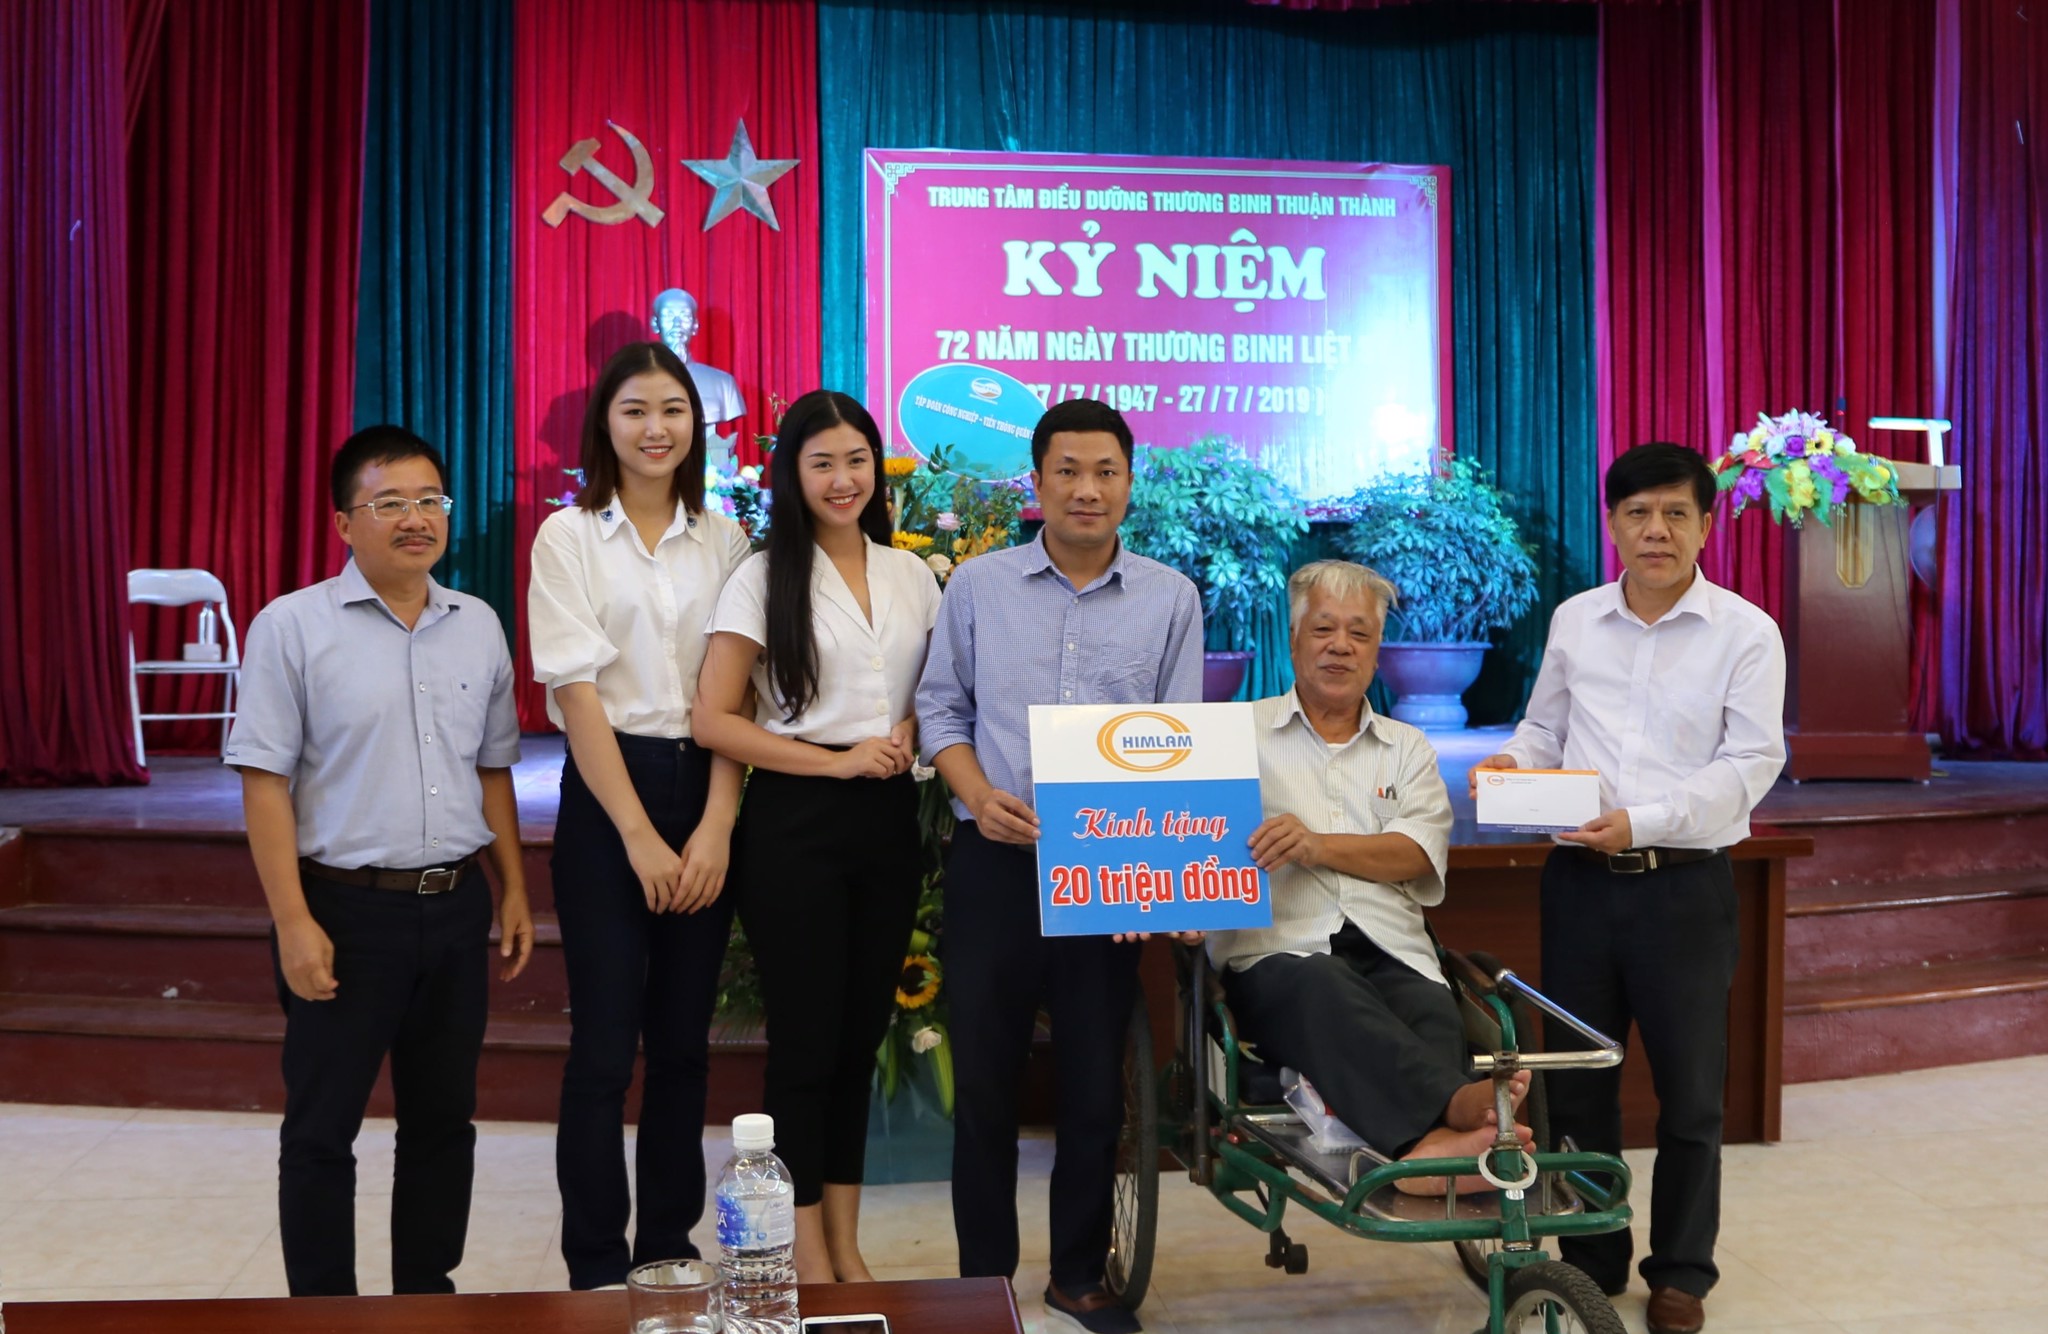 Him Lam hỏi thăm, tặng quà 8 Trung tâm điều dưỡng Thanh Bình